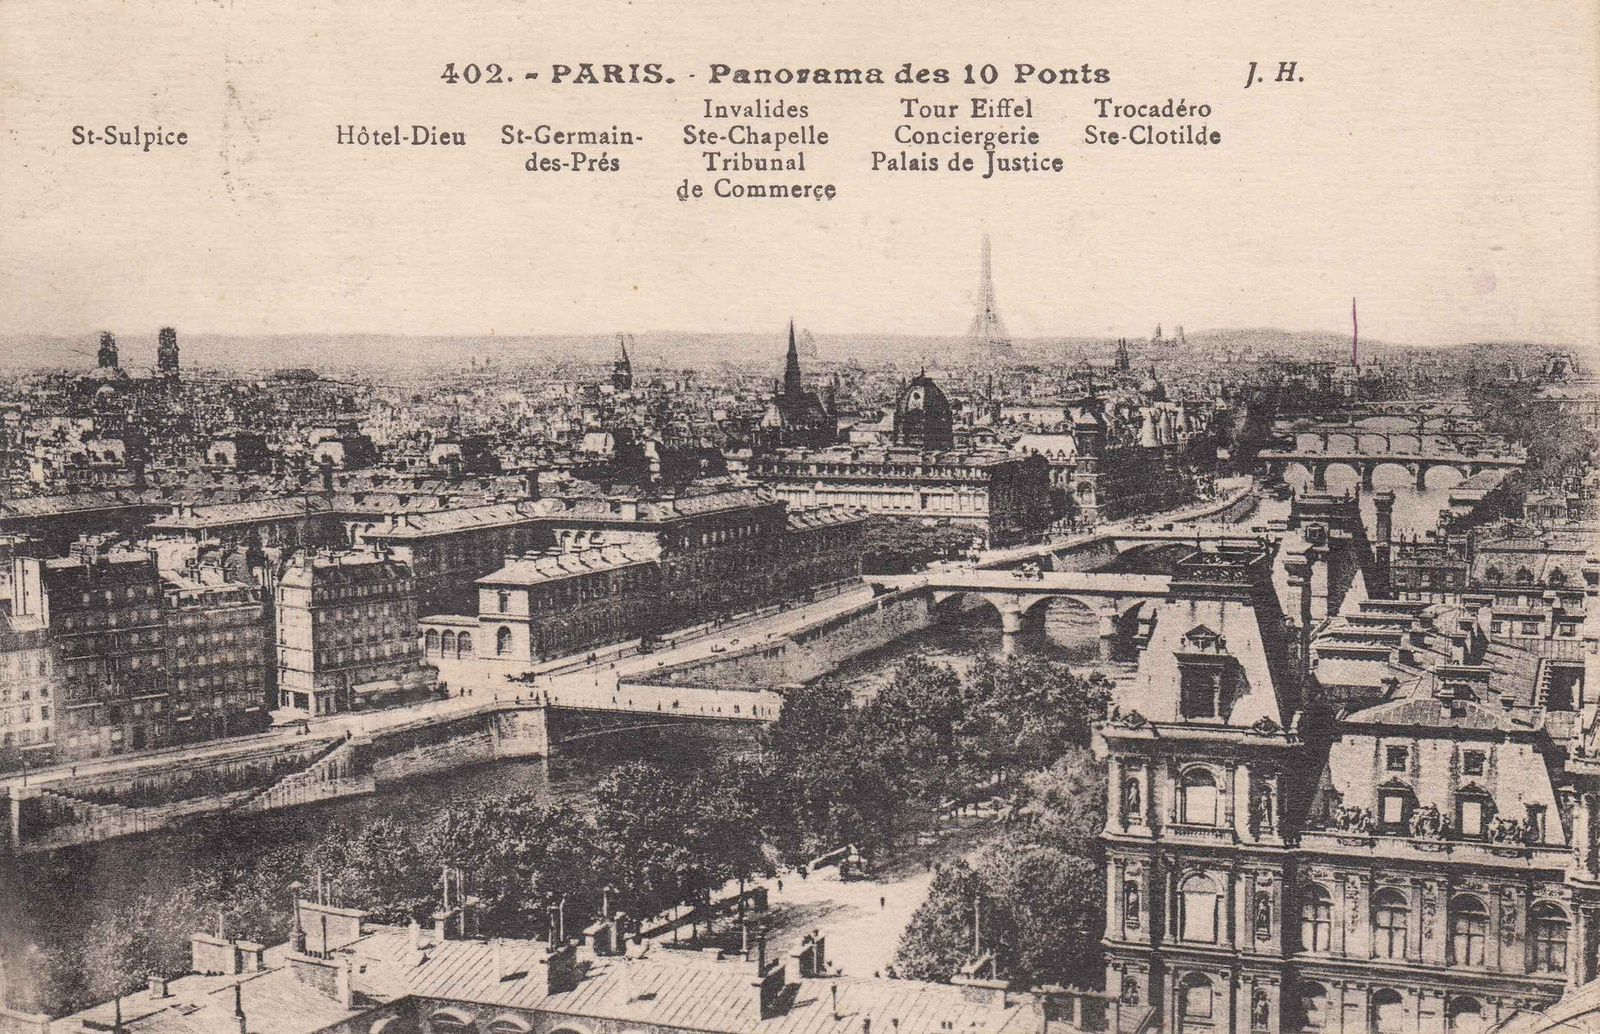 Párisi panoráma 10 Szajna-híddal (1925)l